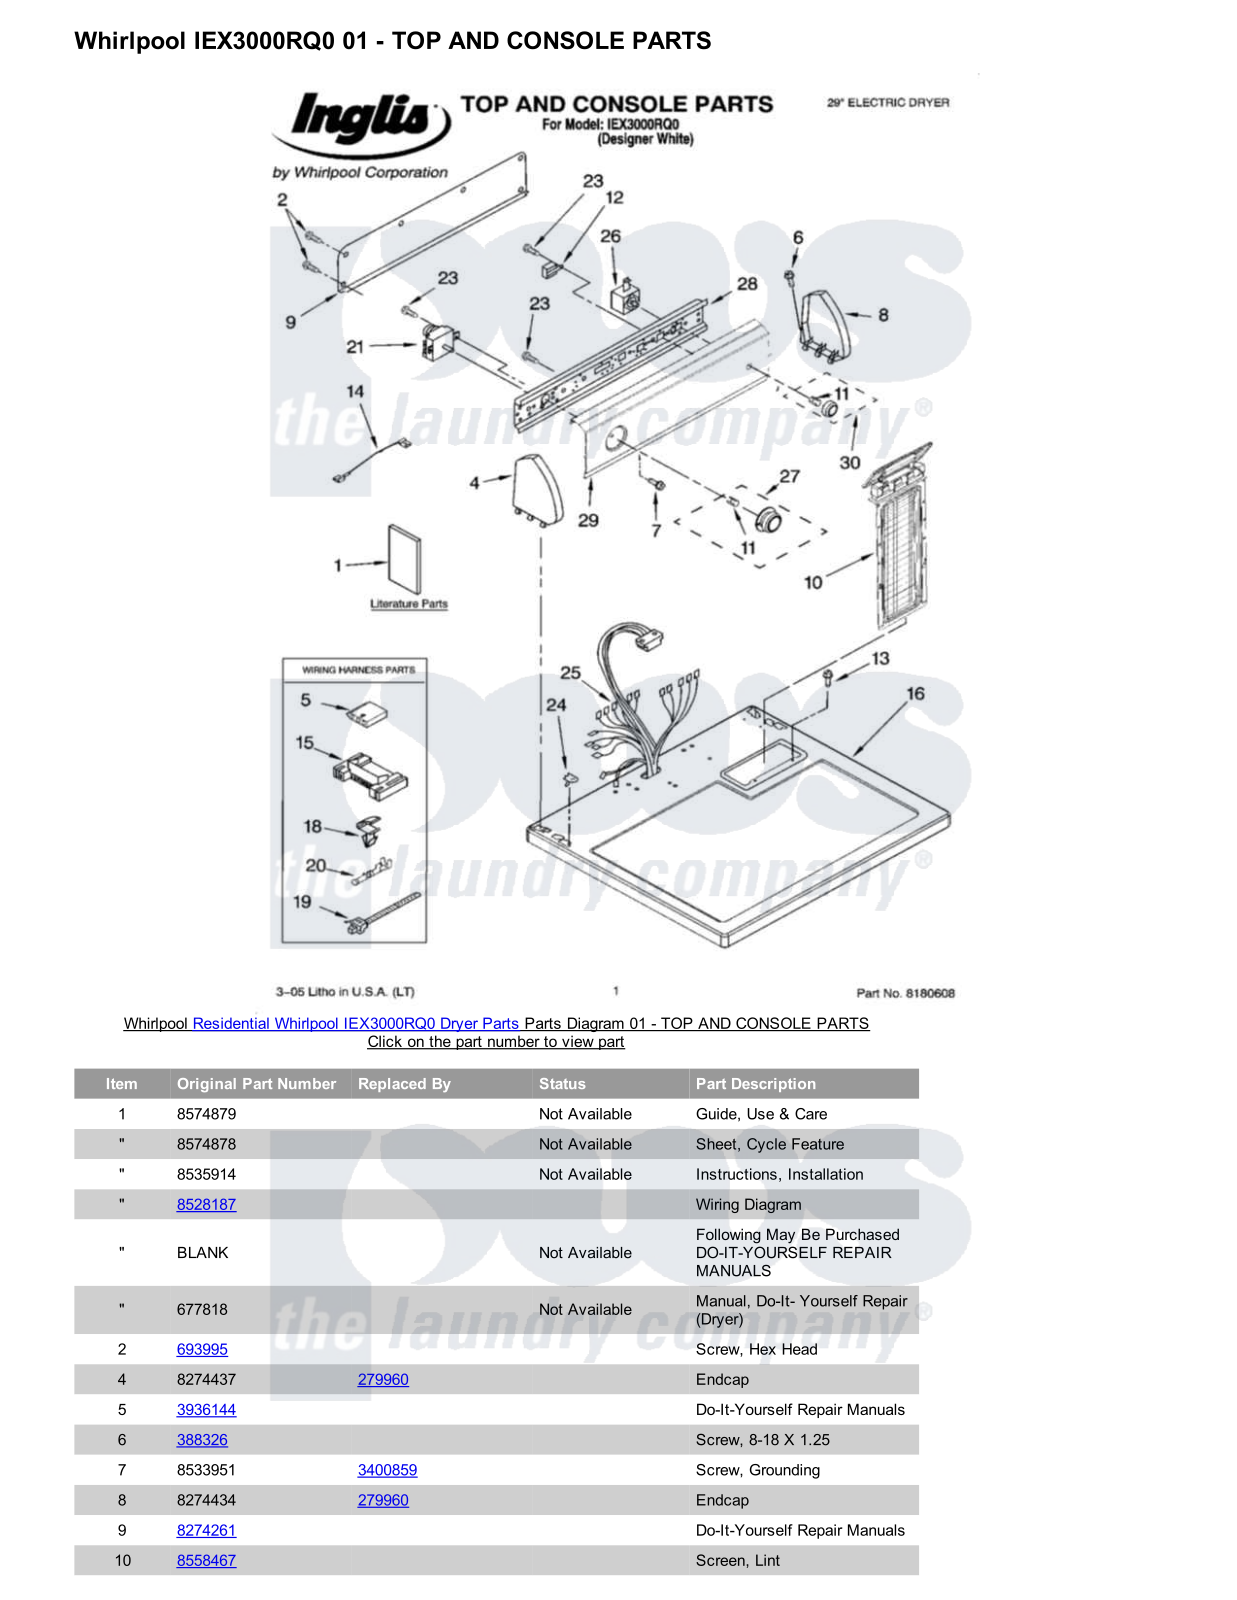 Whirlpool IEX3000RQ0 Parts Diagram